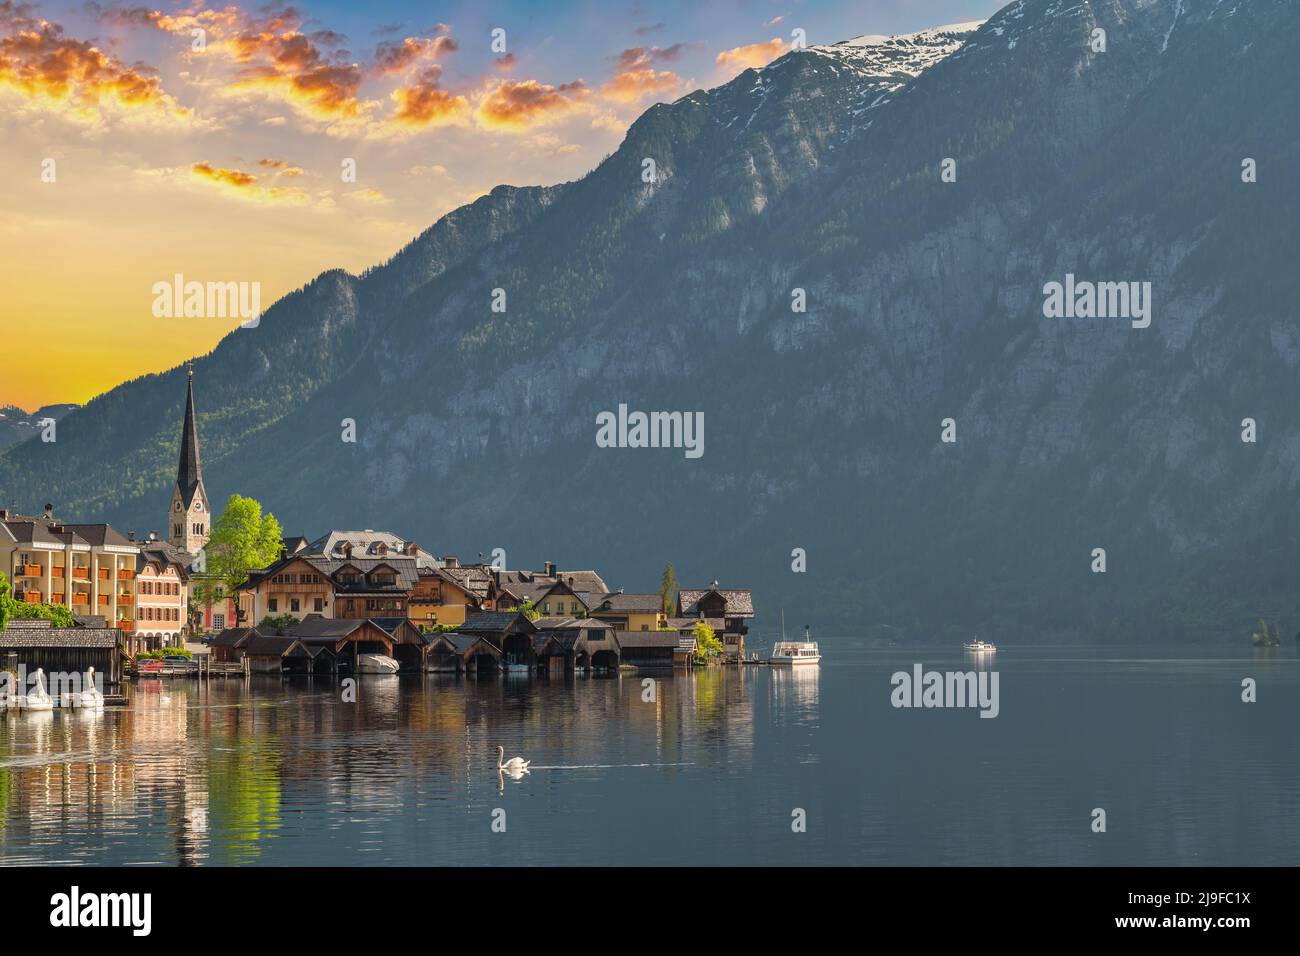 Hallstatt Autriche, nature lever de soleil paysage du village de Hallstatt avec lac et montagne Banque D'Images